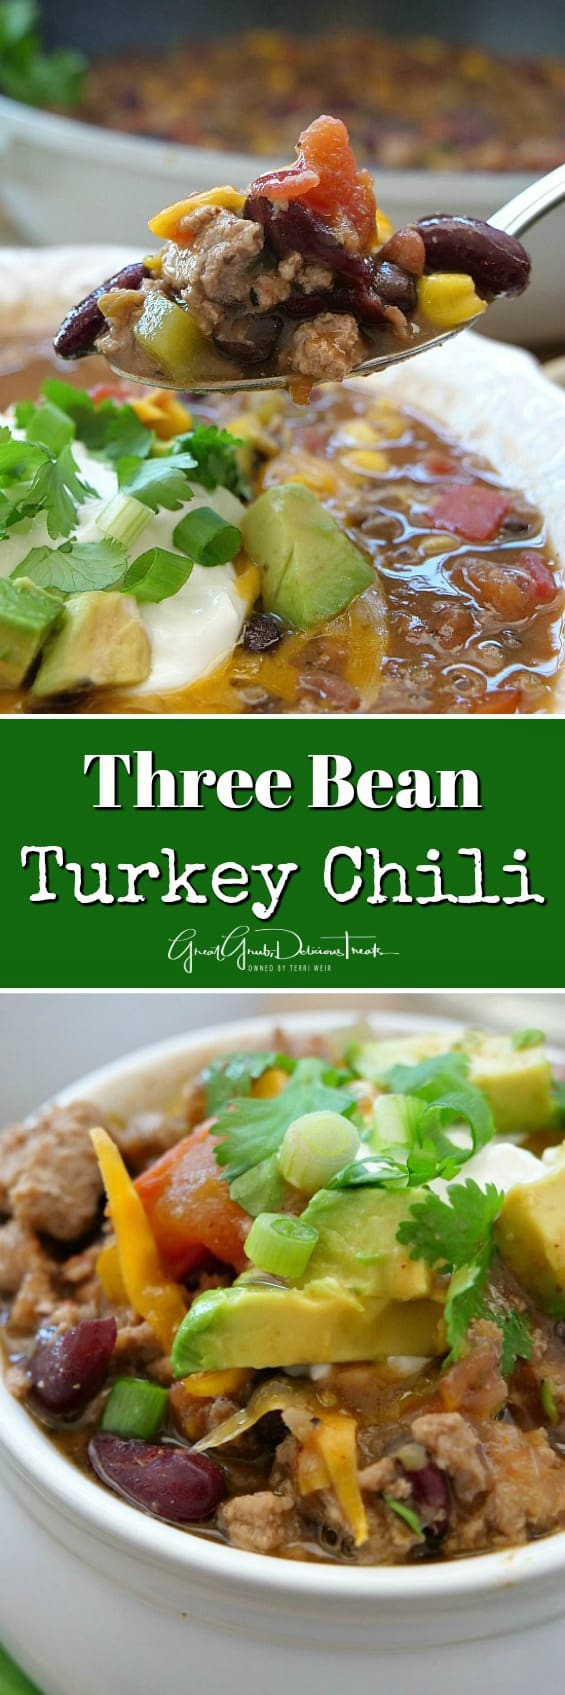 Three Bean Turkey Chili